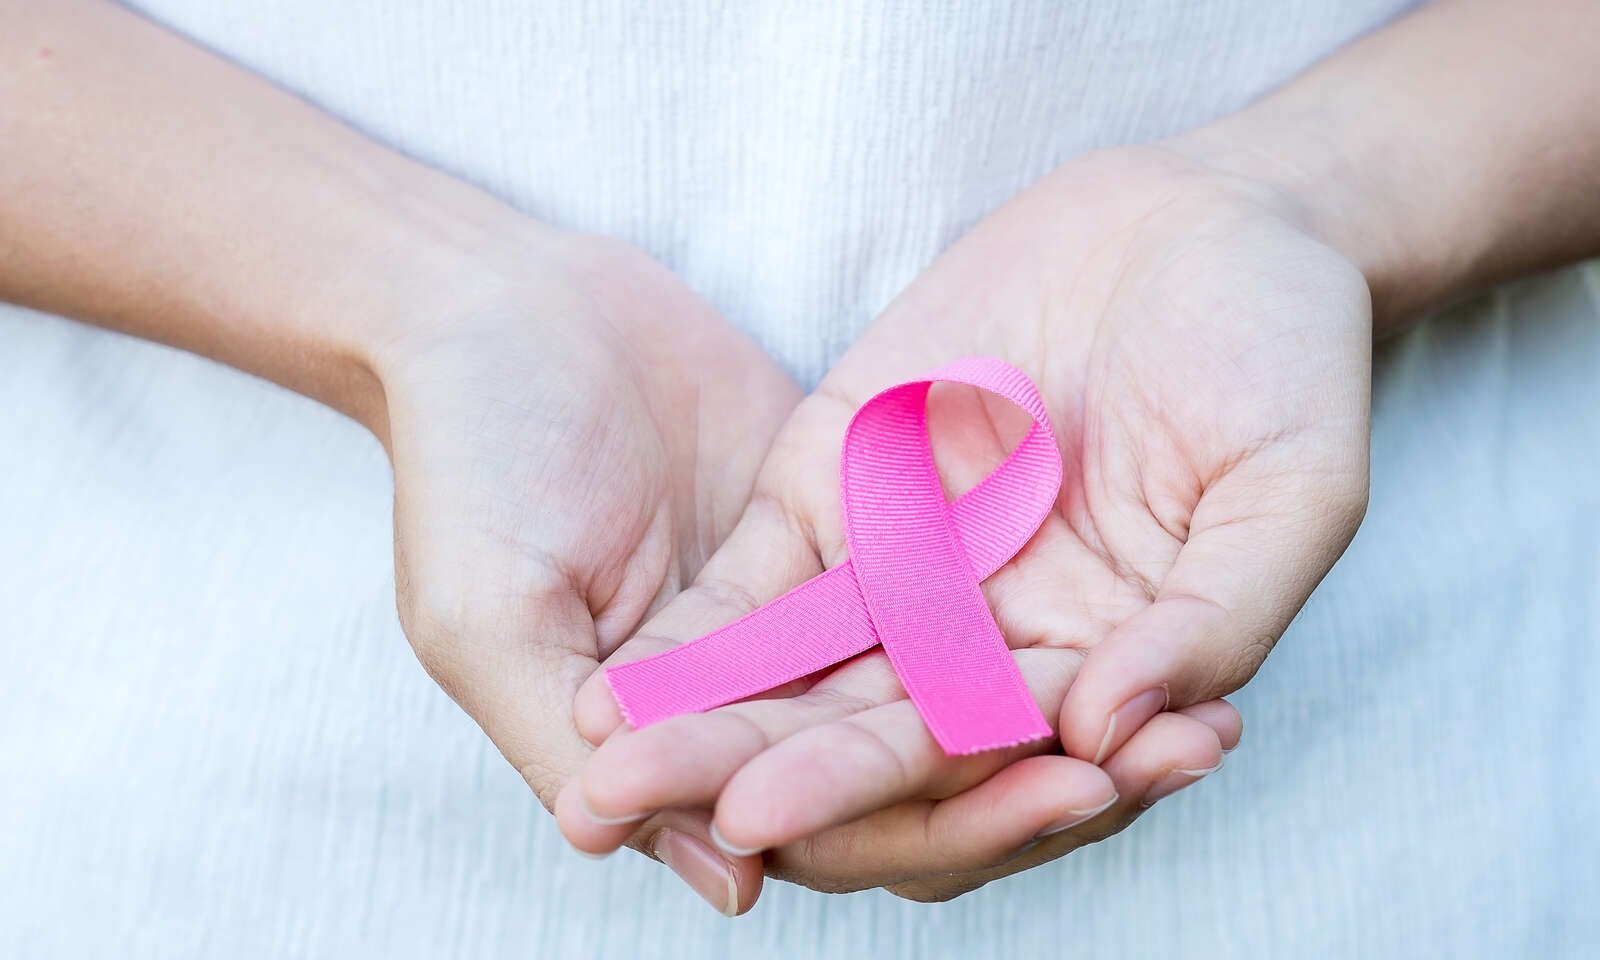 تشخیص زودهنگام سرطان سینه دیگر رویا نیست!